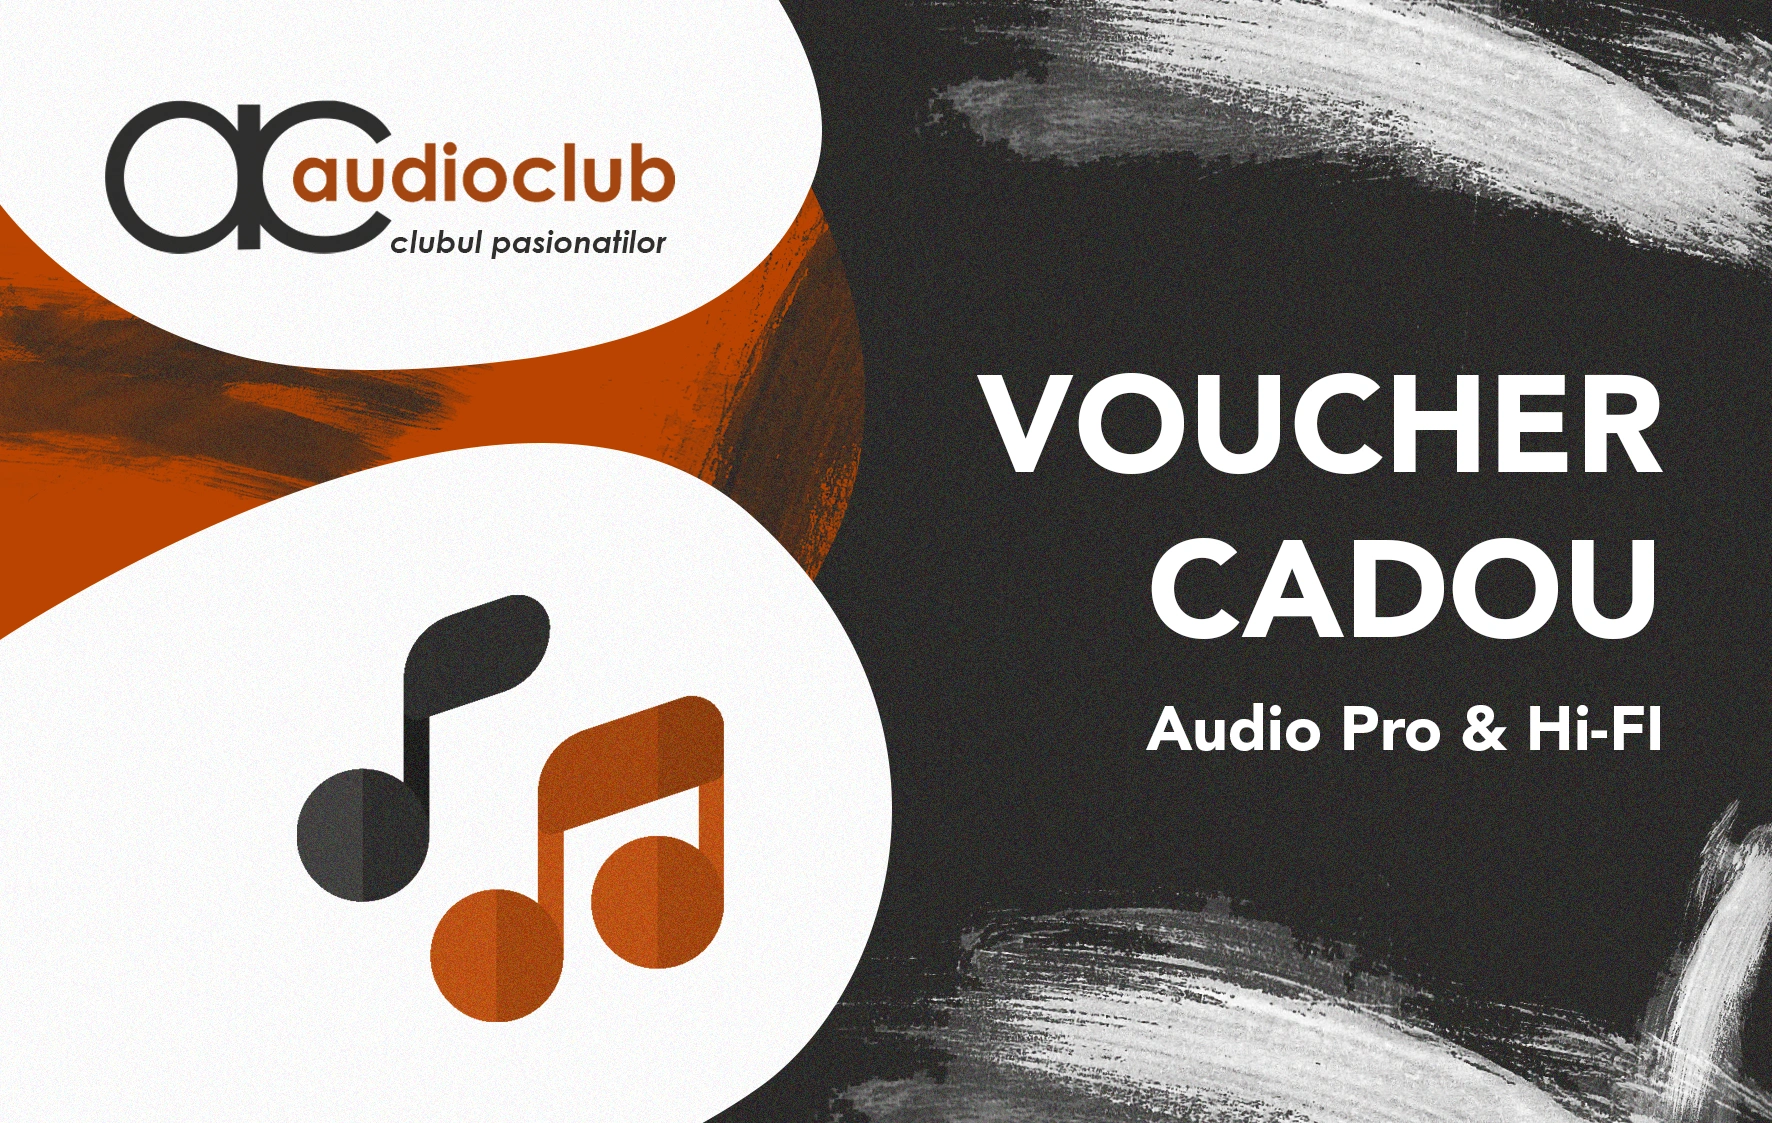 Carduri cadou & vouchere - Audioclub Voucher 300 Ron, audioclub.ro